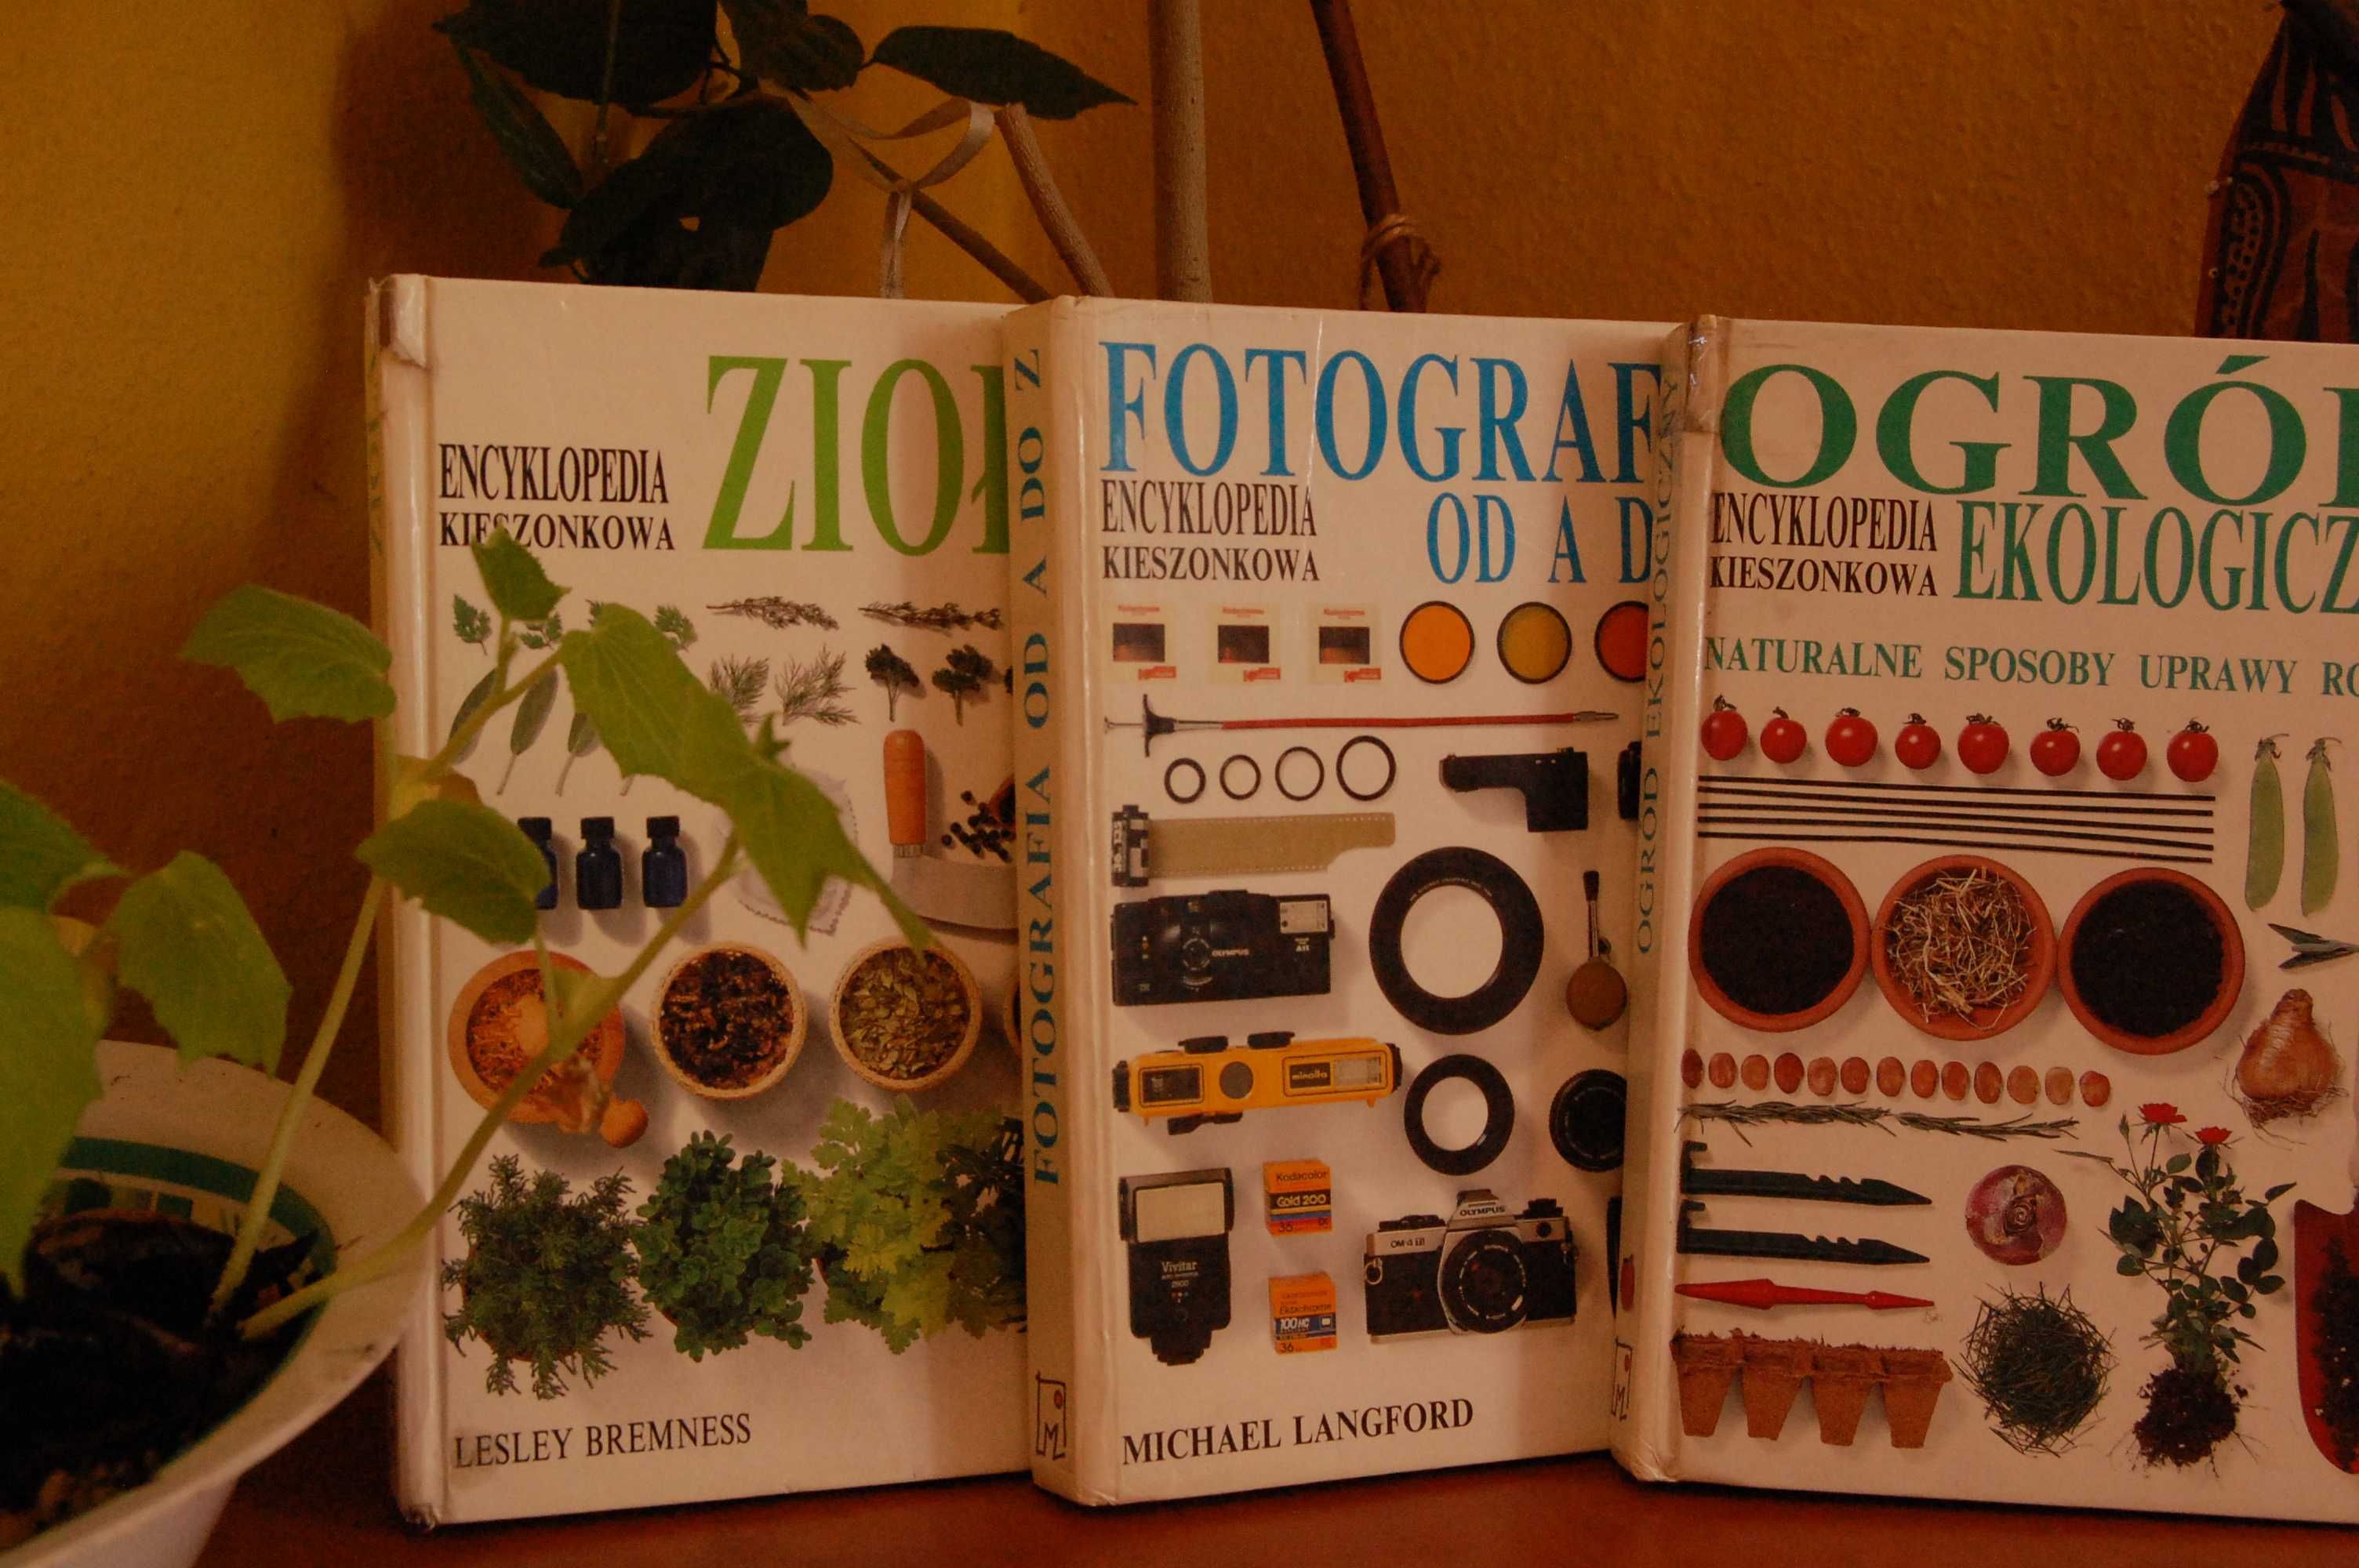 Encyklopedia: Ogród ekologiczny+Fotografia od A do Z gratis-2 książki